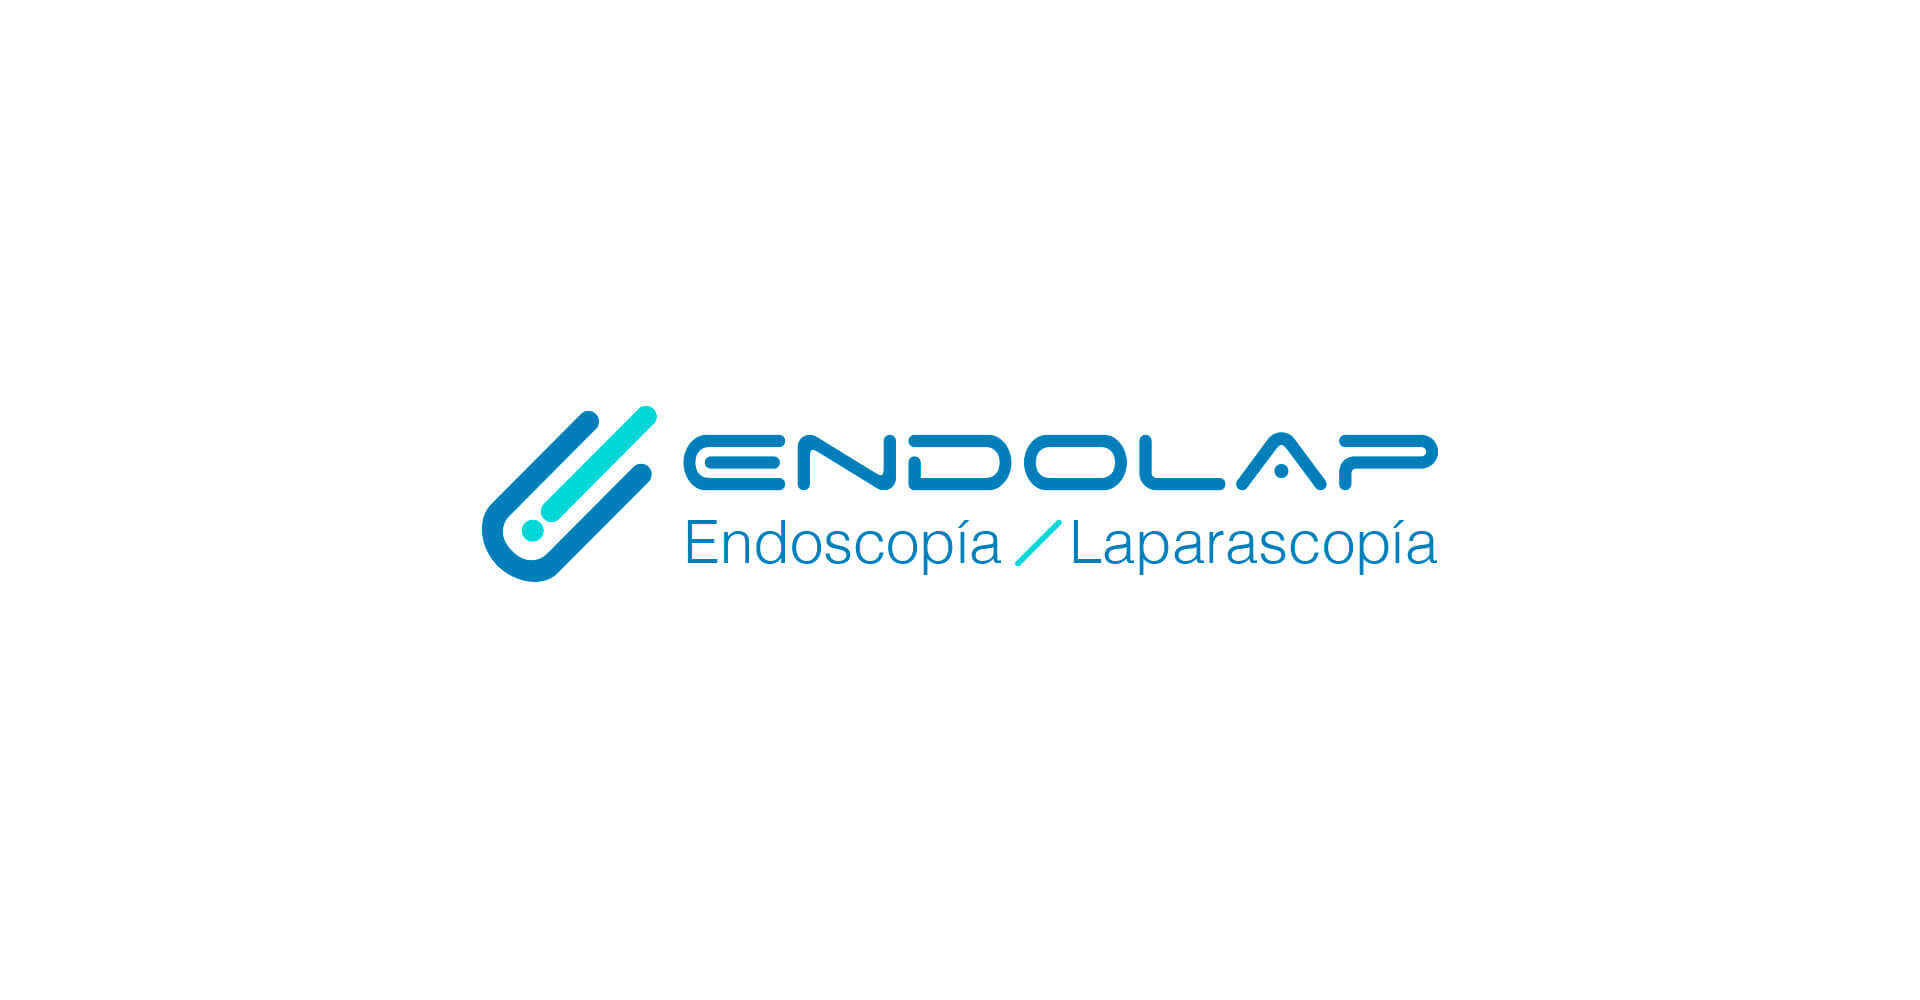 Logo Endolap